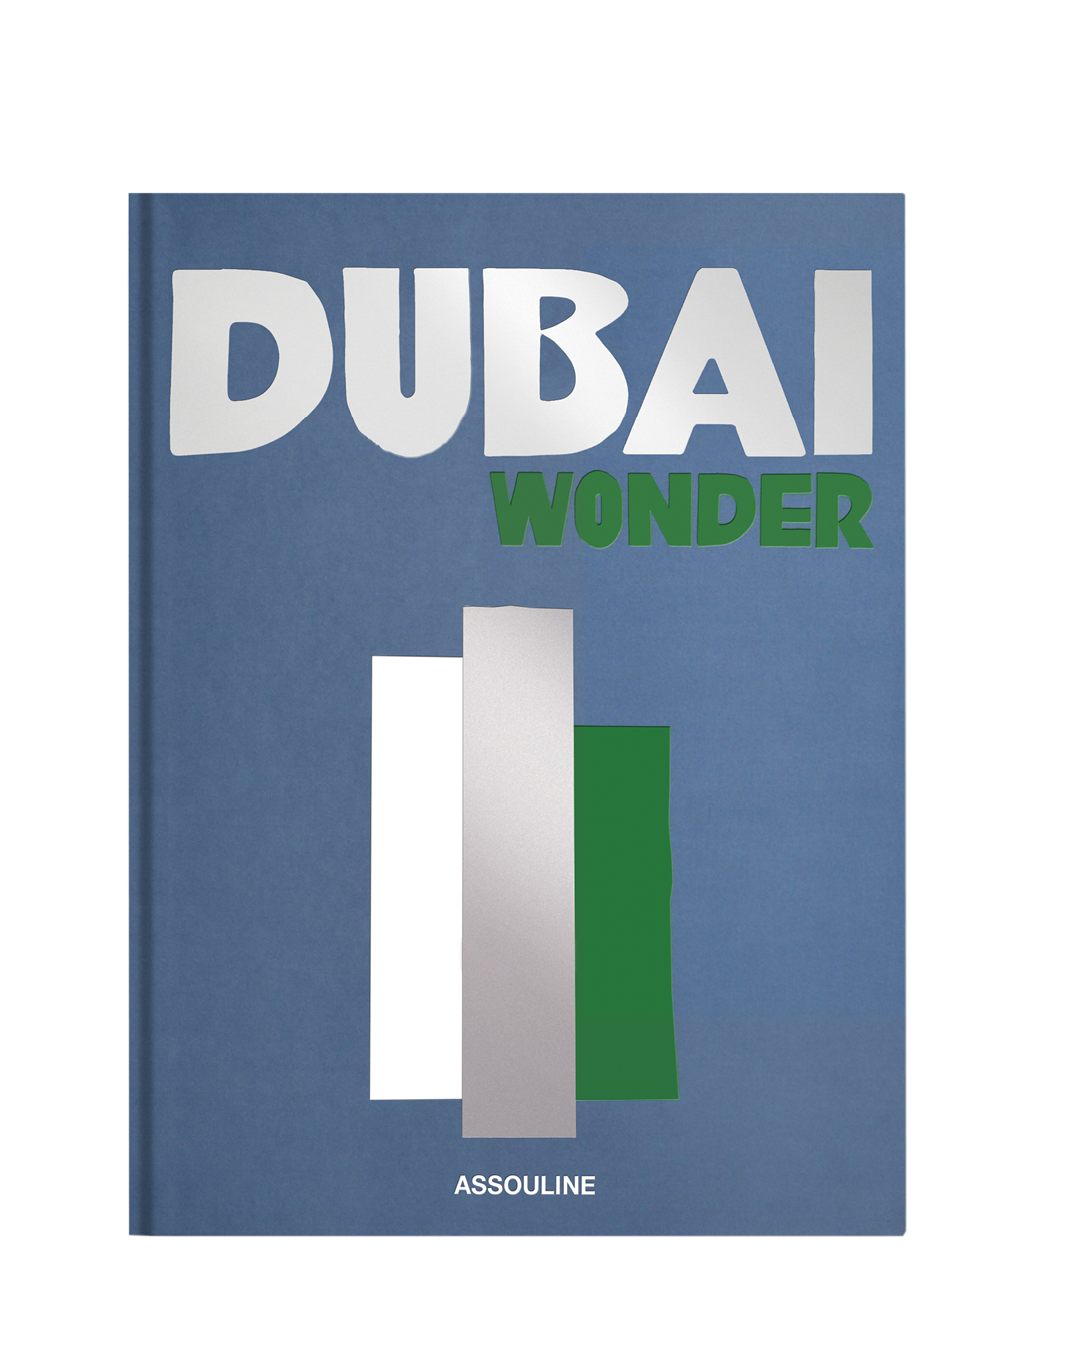 Dubai Wonder